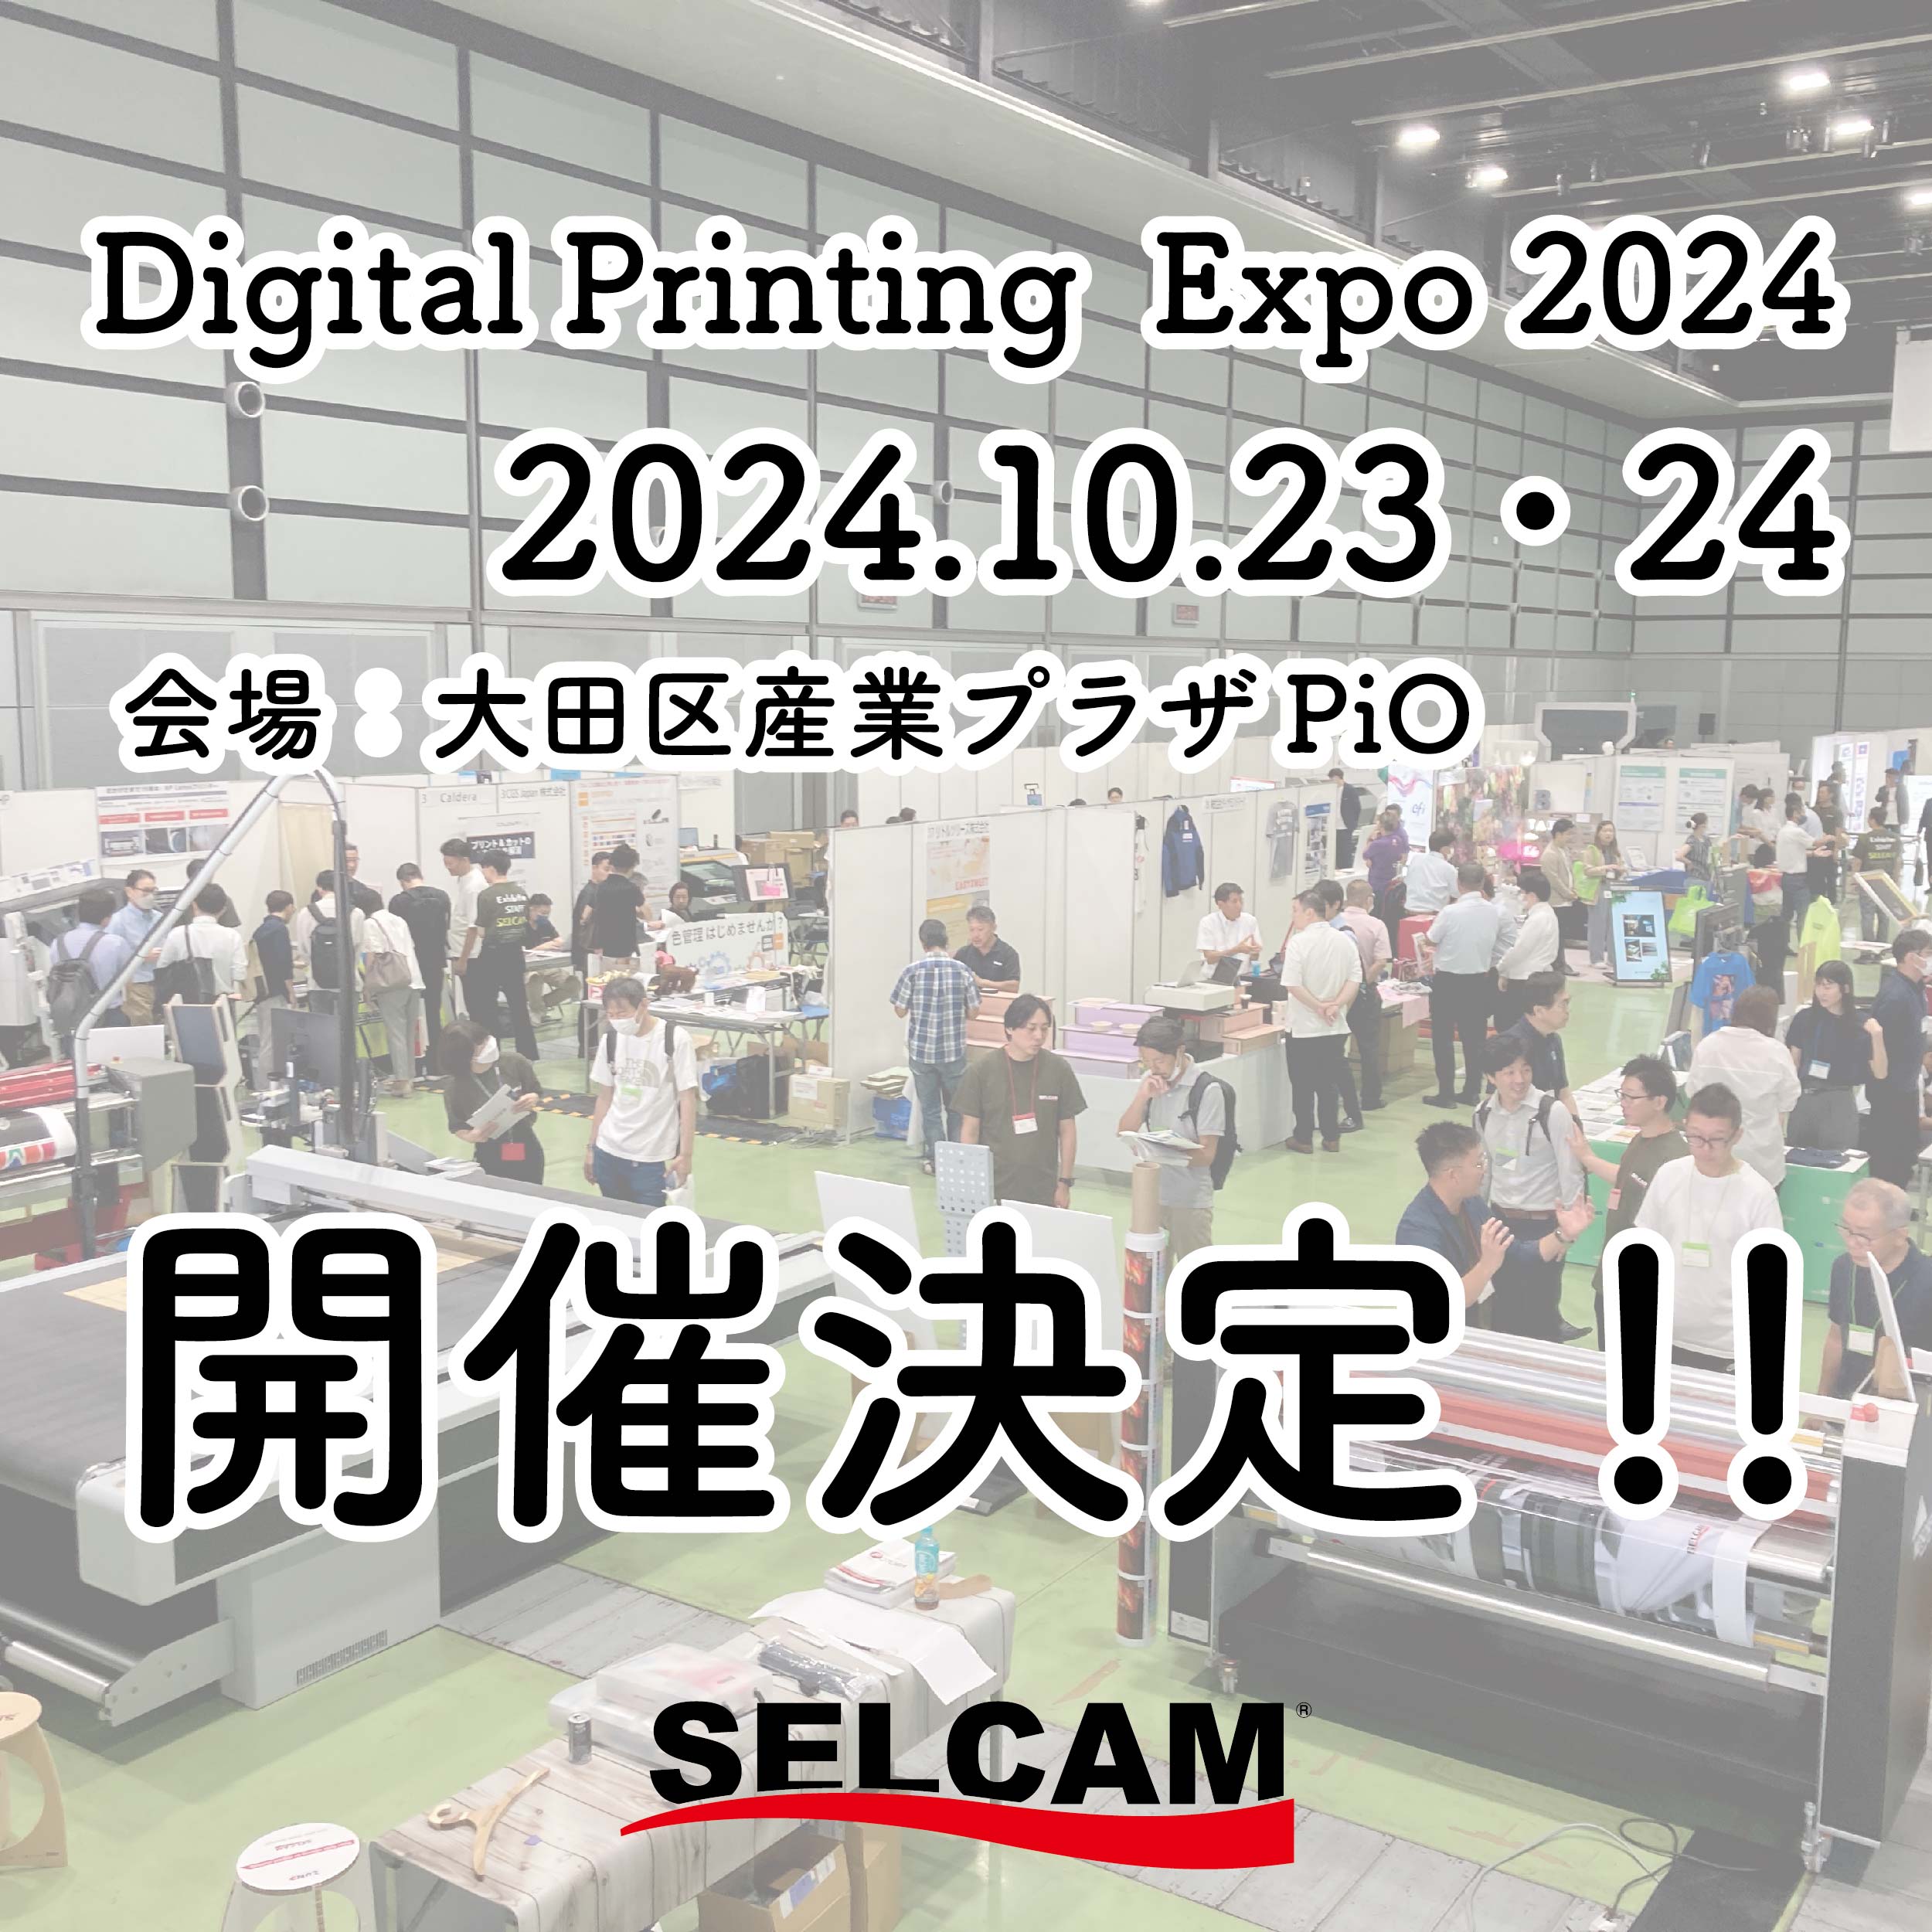 インクジェットの祭典【Digital Printing Expo 2024】開催決定!!